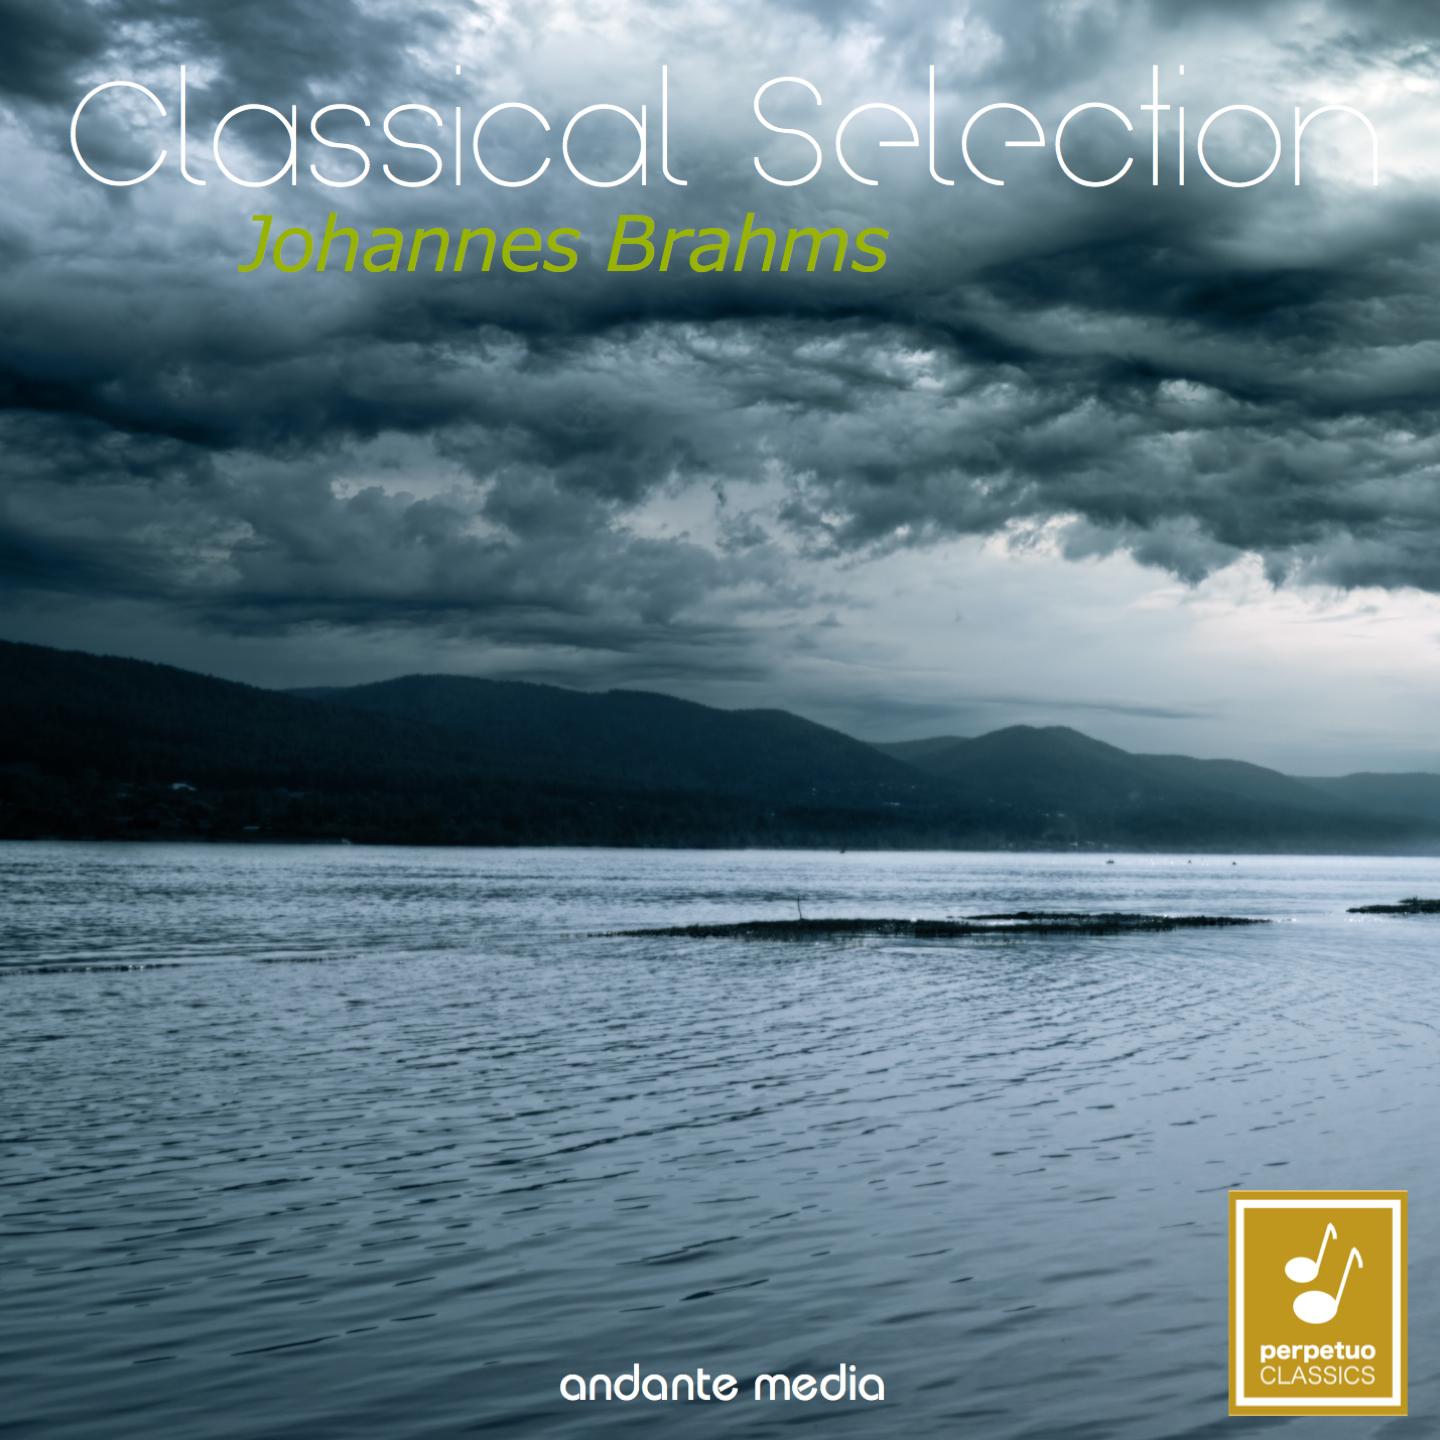 Sonata No. 1 for Viola and Piano in F Minor, Op. 120: III. Allegretto grazioso